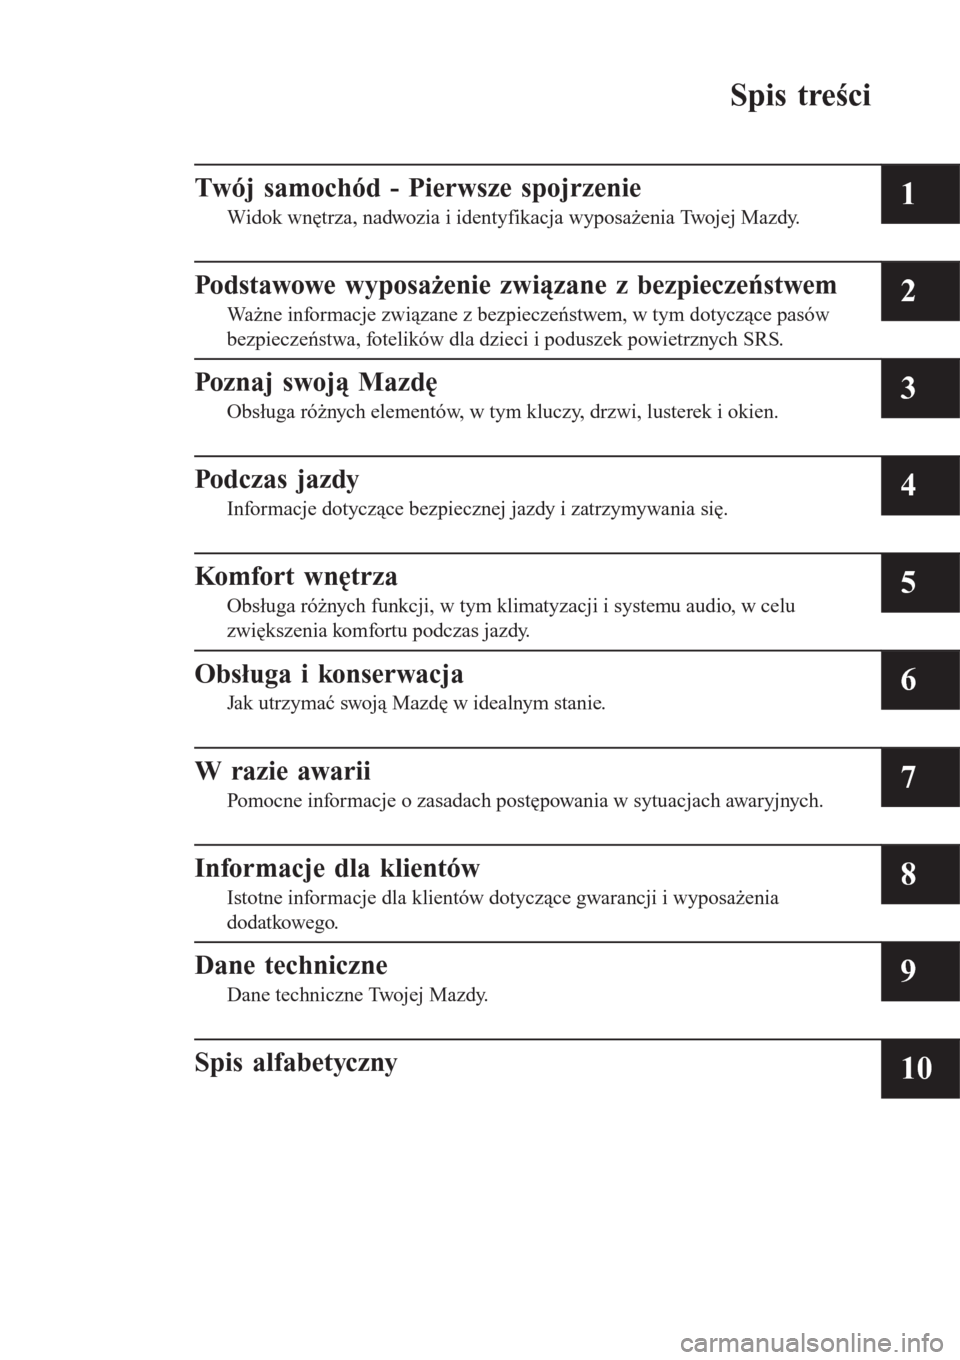 MAZDA MODEL MX-5 2015  Instrukcja Obsługi (in Polish) Spis treści
Twój samochód - Pierwsze spojrzenie
Widok wnętrza, nadwozia i identyfikacja wyposażenia Twojej Mazdy.1
Podstawowe wyposażenie związane z bezpieczeństwem
Ważne informacje związane